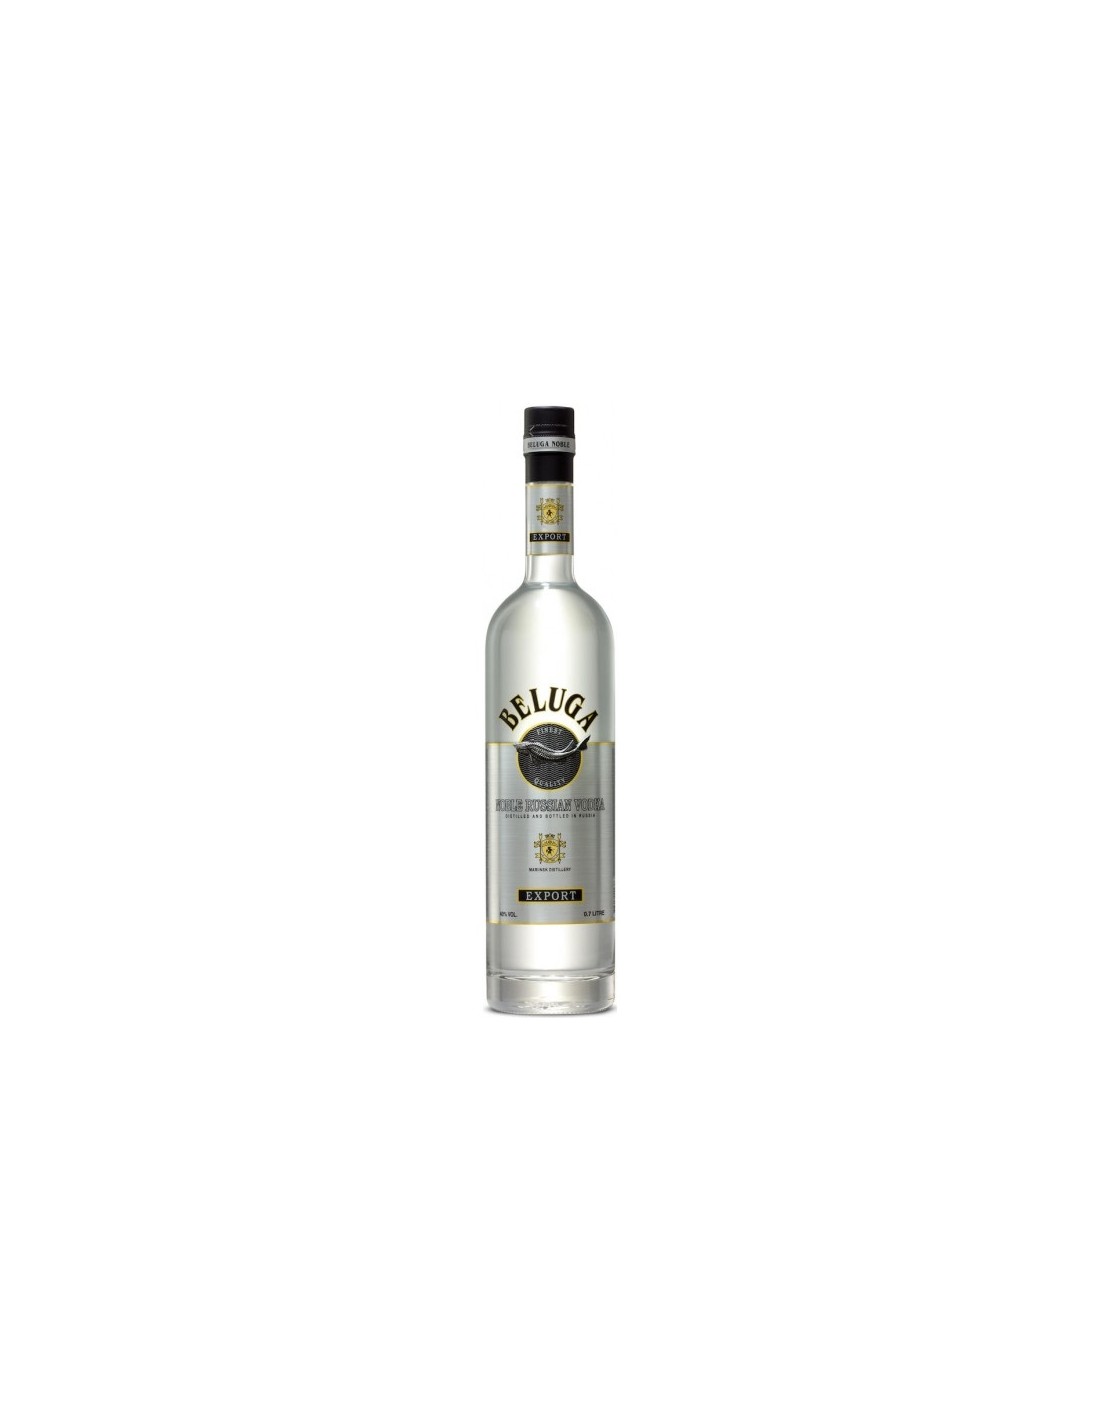 Vodca Beluga Noble, 0.7L, 40% alc., Rusia alcooldiscount.ro